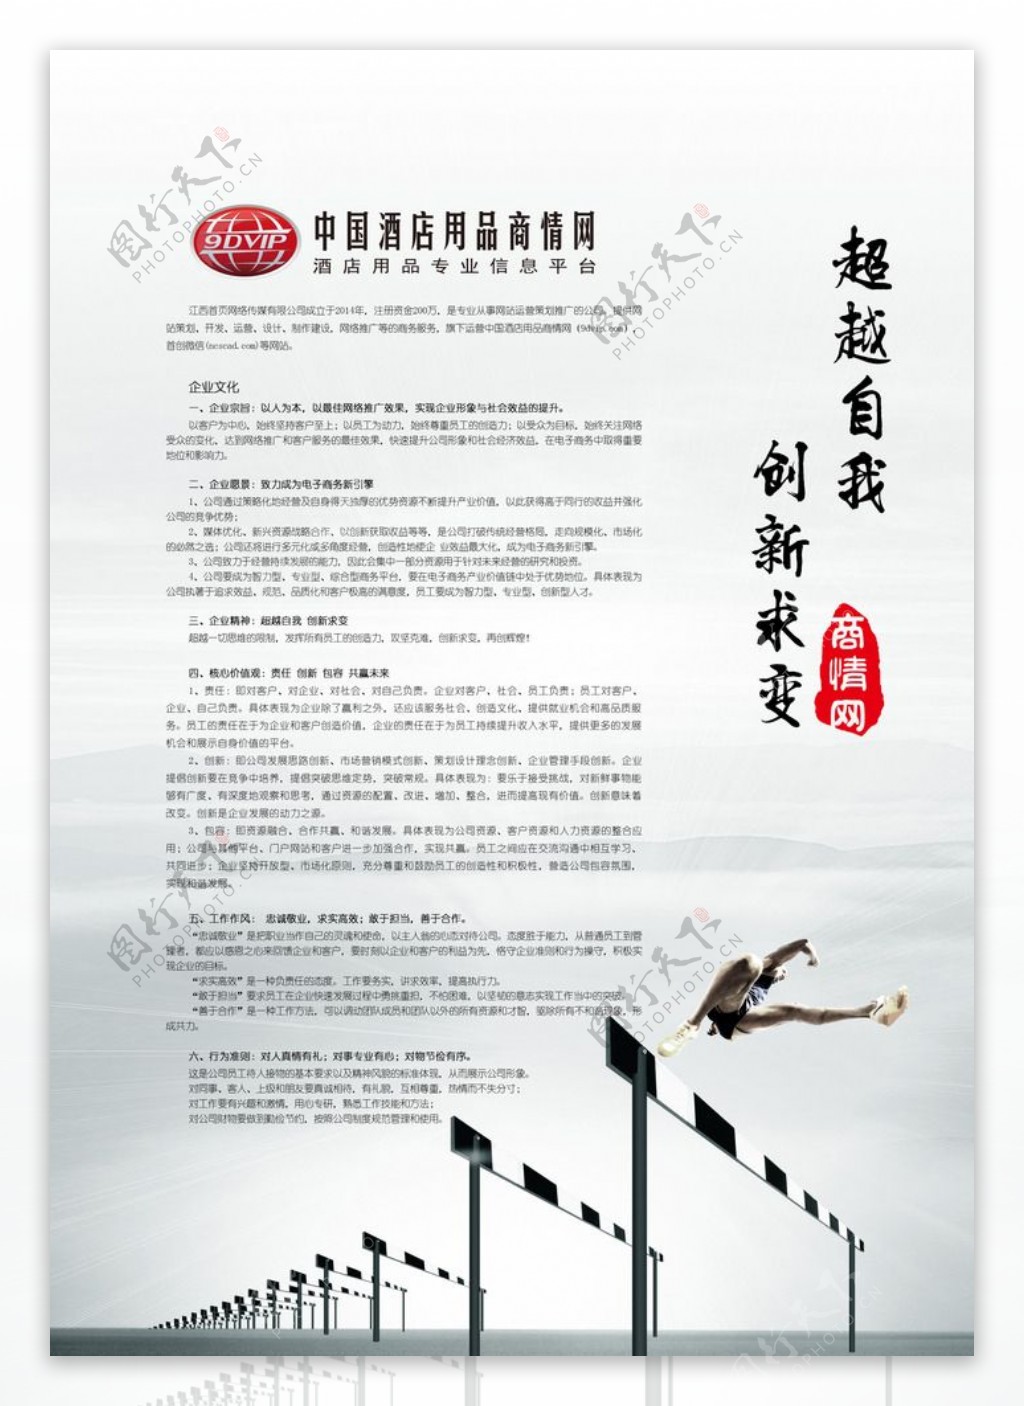 中国酒店用品商情网海报企业文化图片